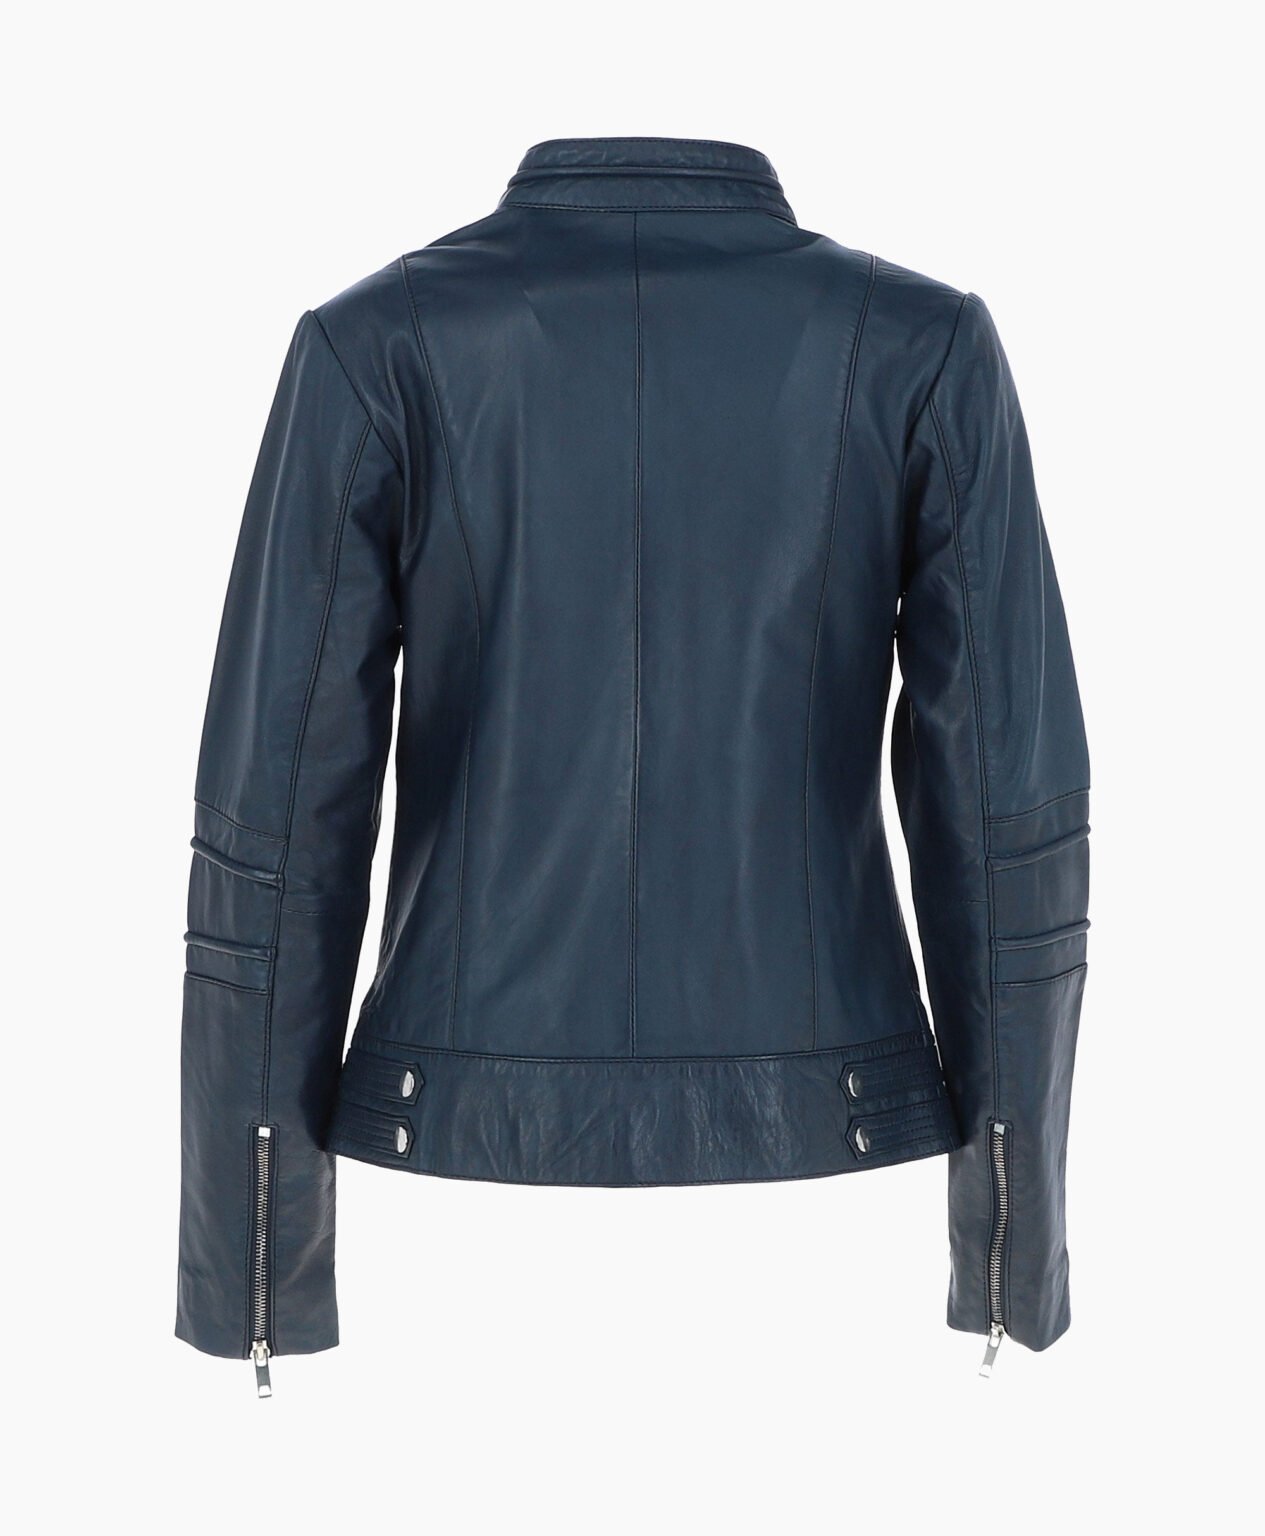 vogue-jacket-leather-biker-jacket-navy-lahaina-image202